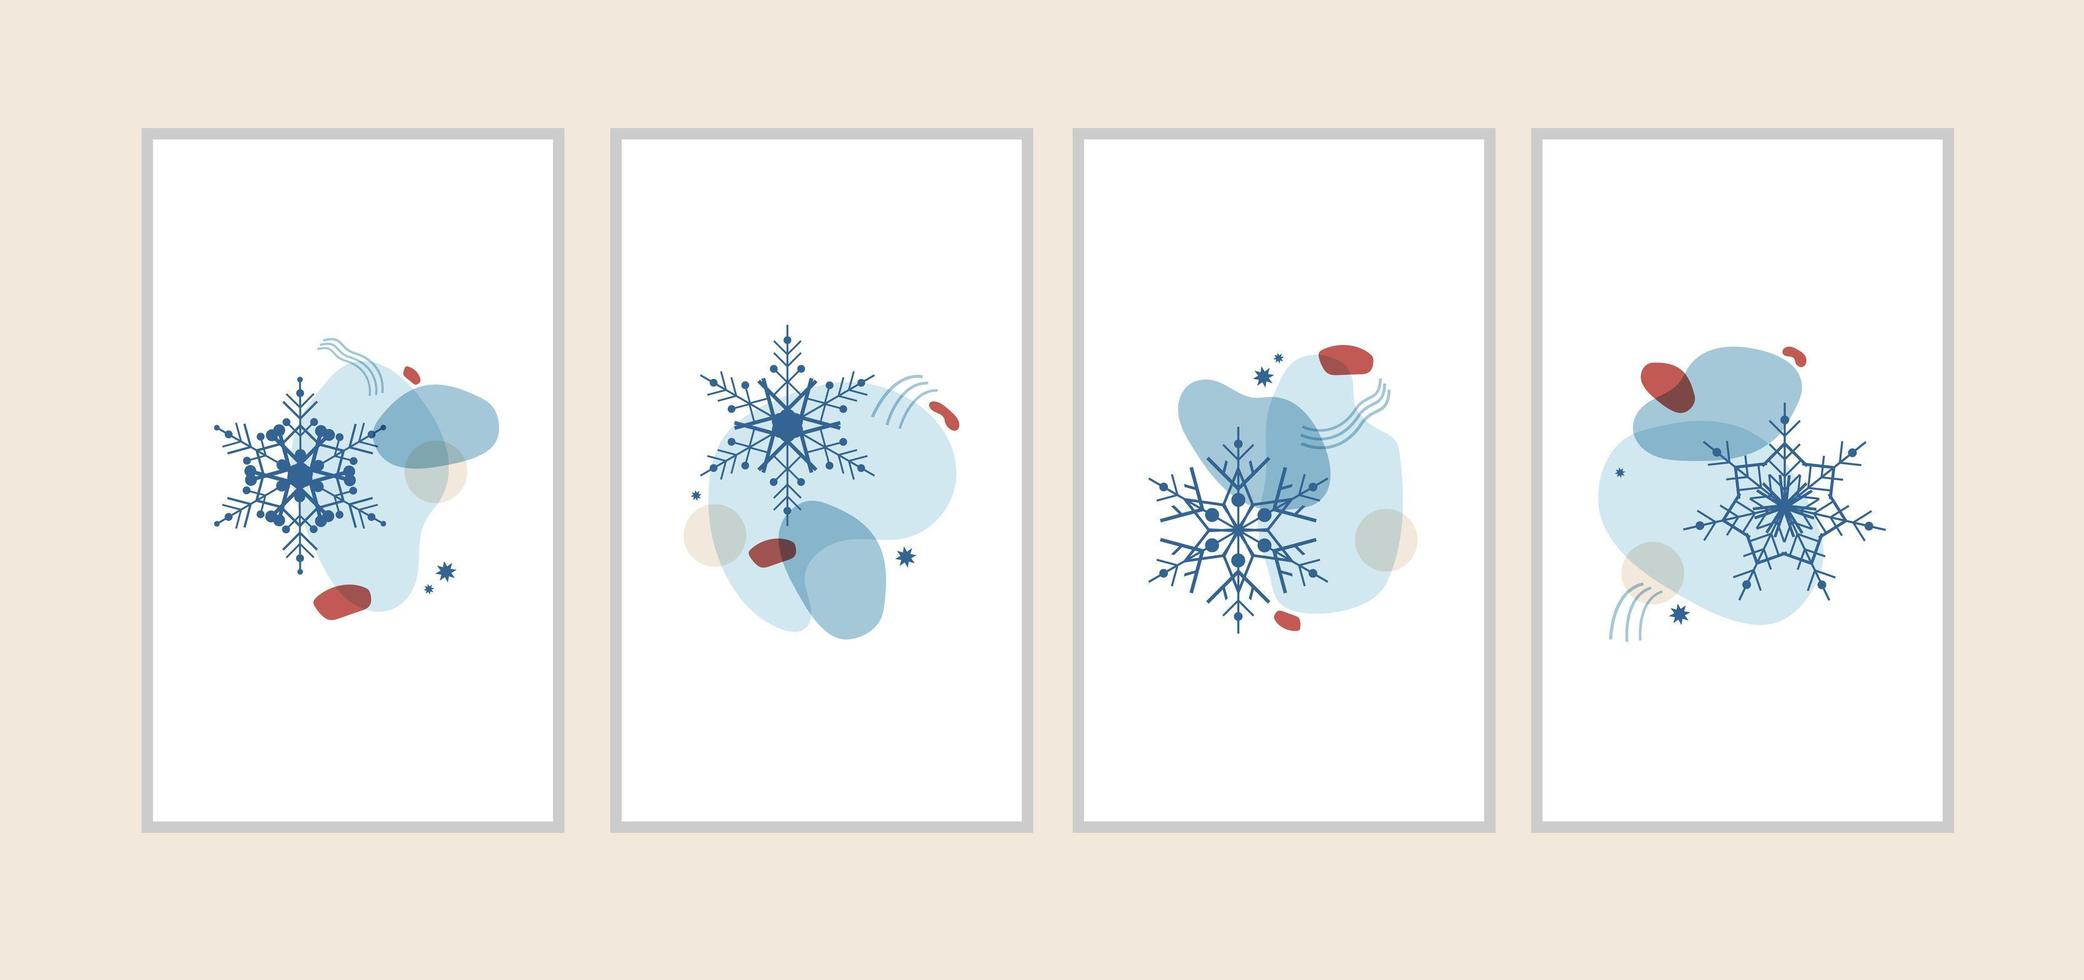 set abstrakt vinter illustration av former och snöflingor i blått med en röd. vertikal dekor för kort, affischer, inbjudningar, banderoller, sociala nätverk för jul och nyår. vektor isolerade